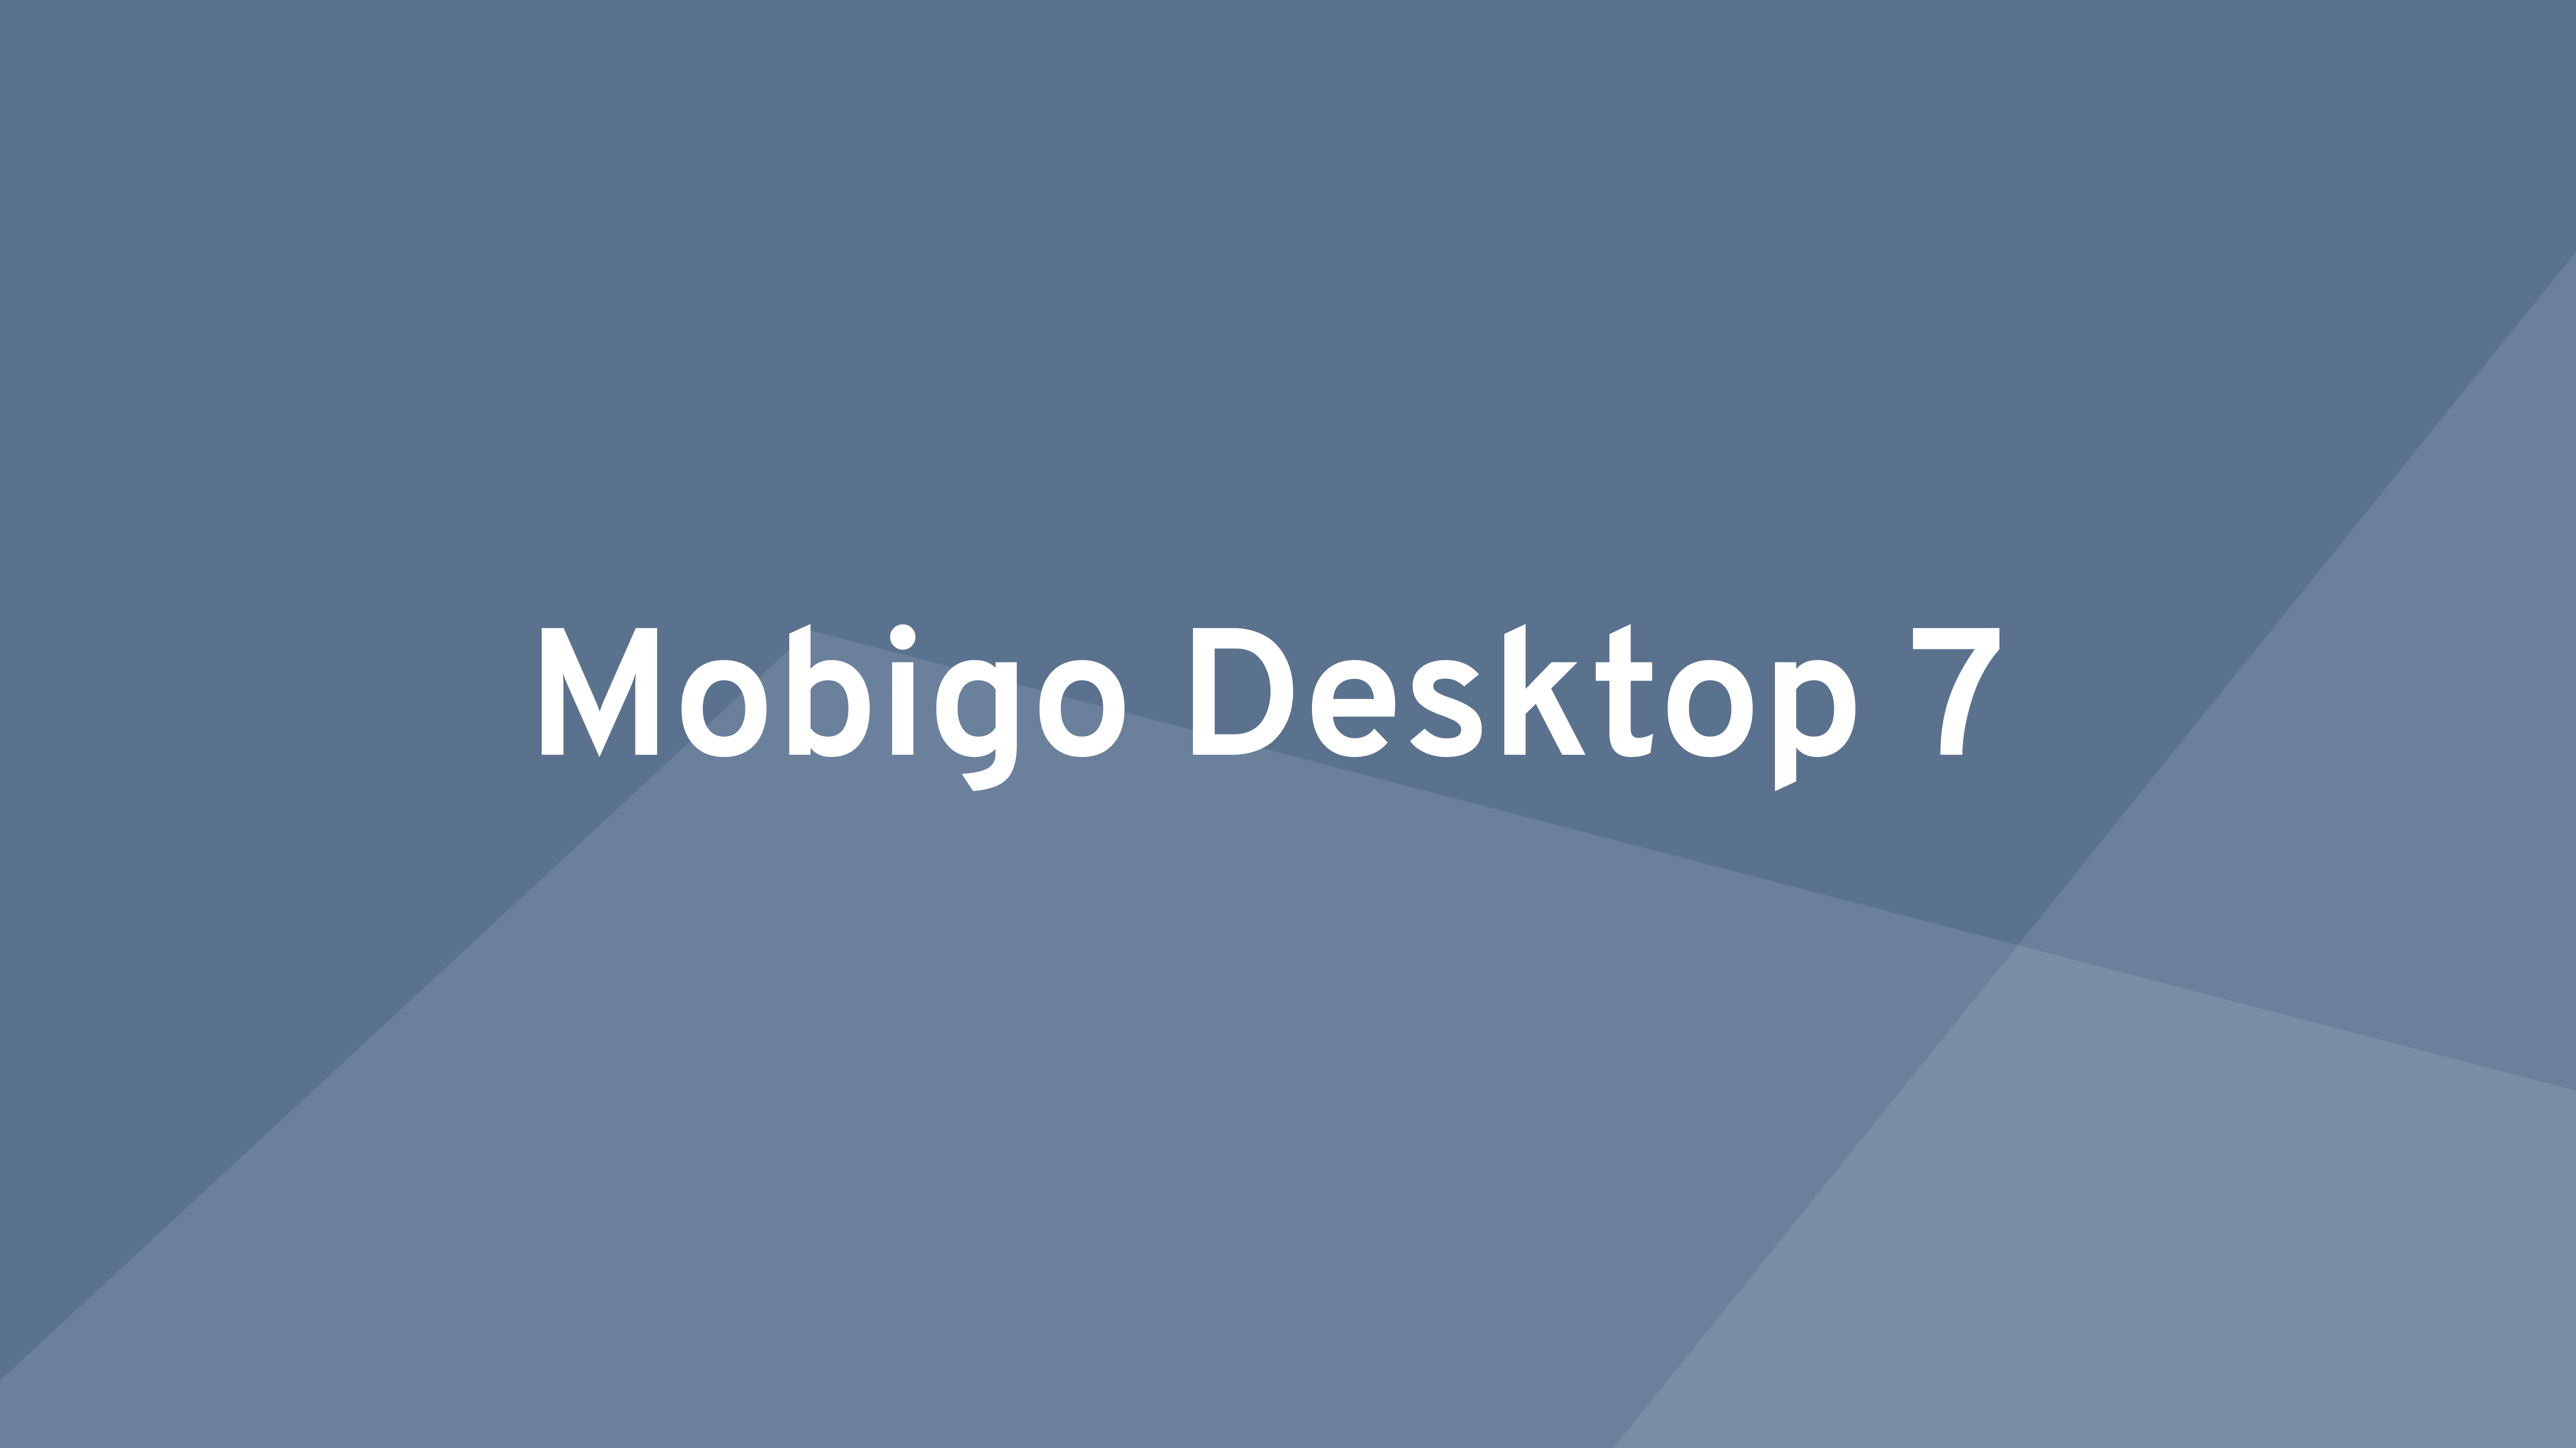 8 nyheter i Mobigo Desktop 7